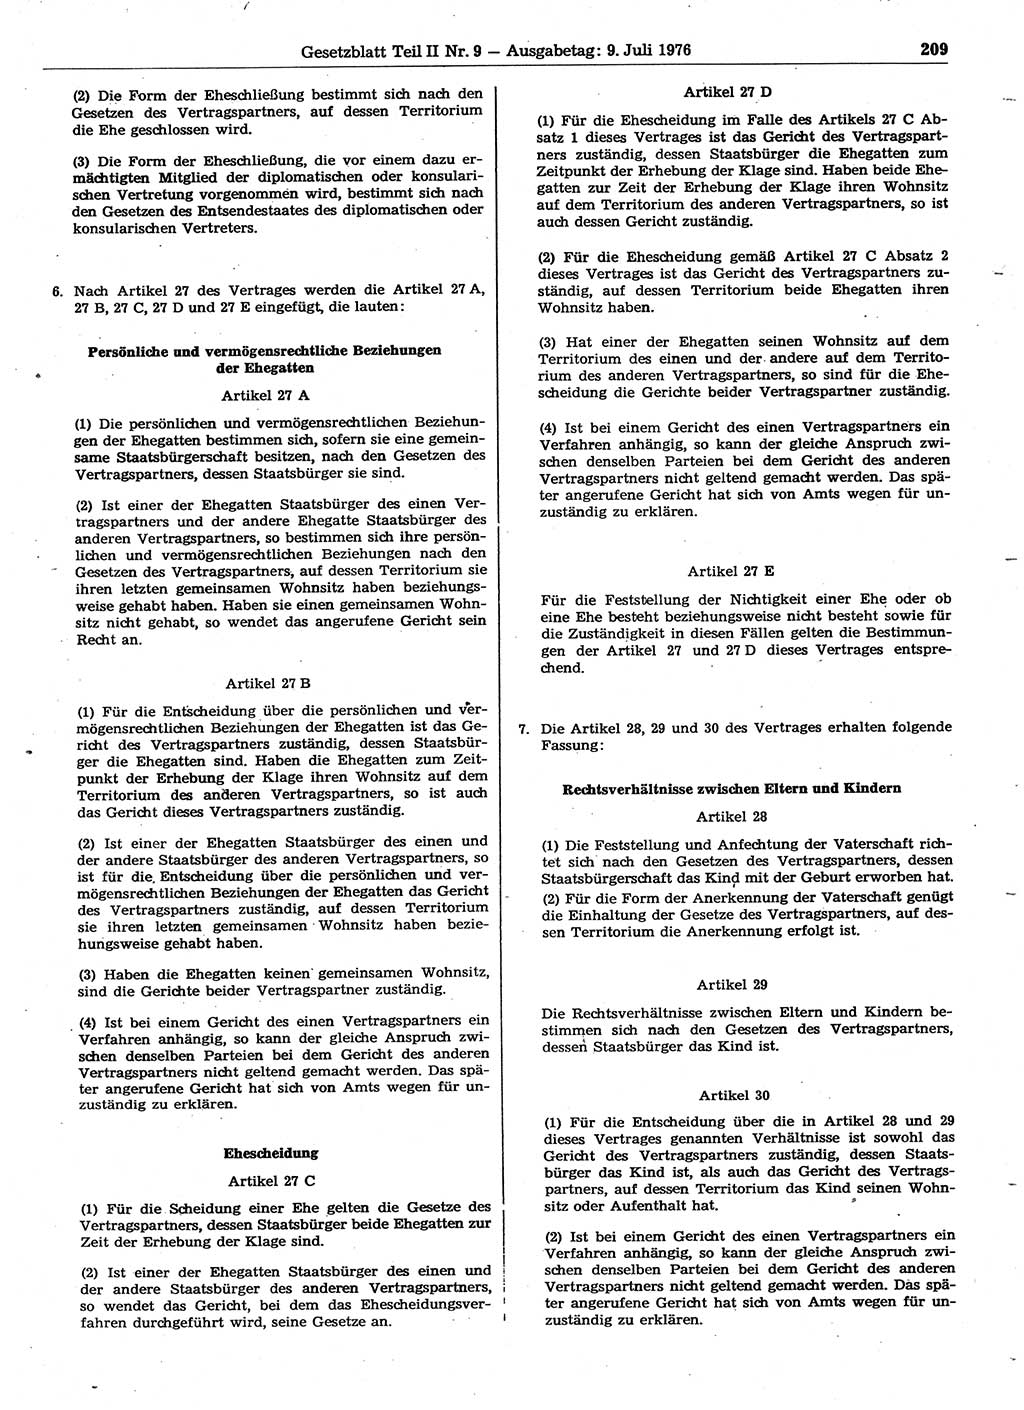 Gesetzblatt (GBl.) der Deutschen Demokratischen Republik (DDR) Teil ⅠⅠ 1976, Seite 209 (GBl. DDR ⅠⅠ 1976, S. 209)